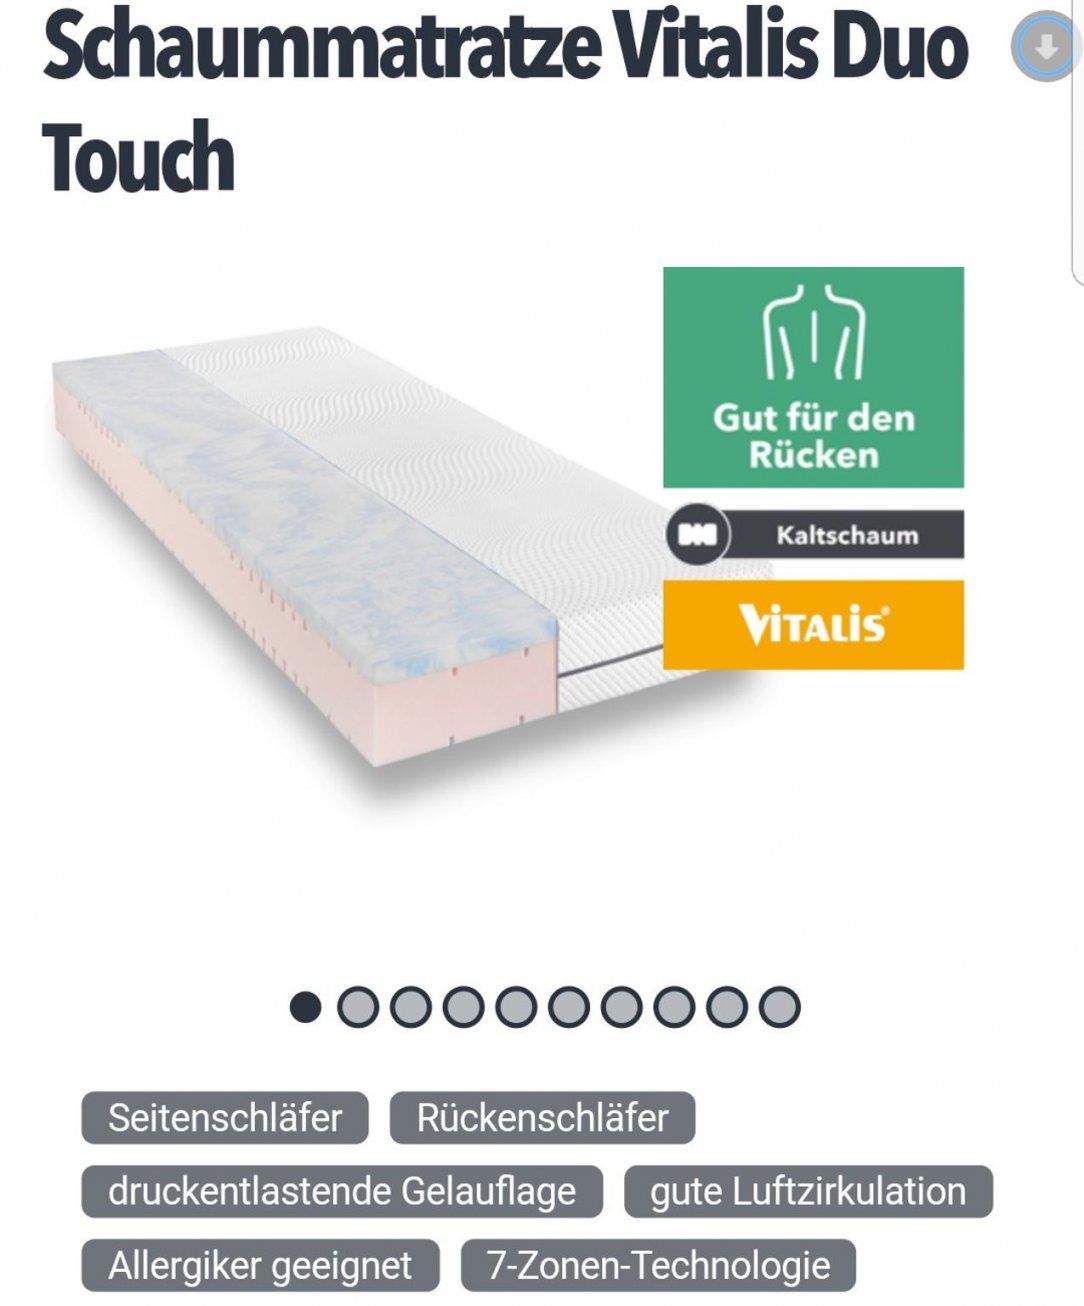 Gebraucht Matratze Vitalis Duo Touch H2 In 81679 München Um € 40000 von Vitalis Duo Touch H2 Bild